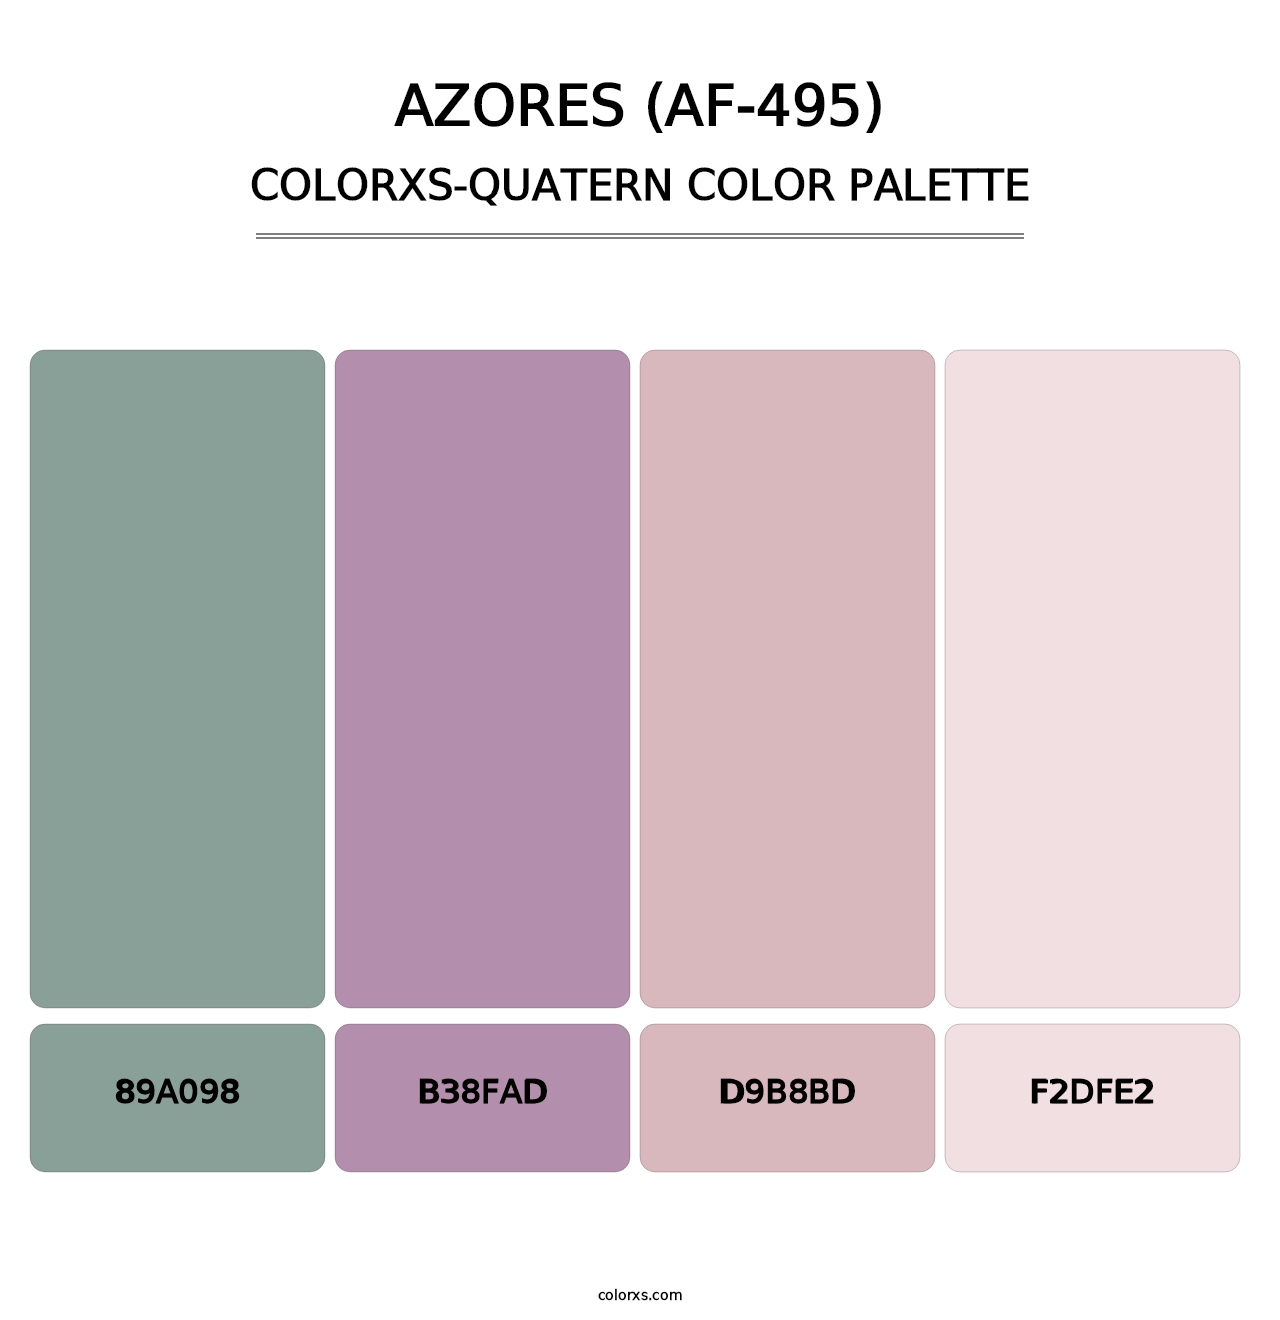 Azores (AF-495) - Colorxs Quatern Palette